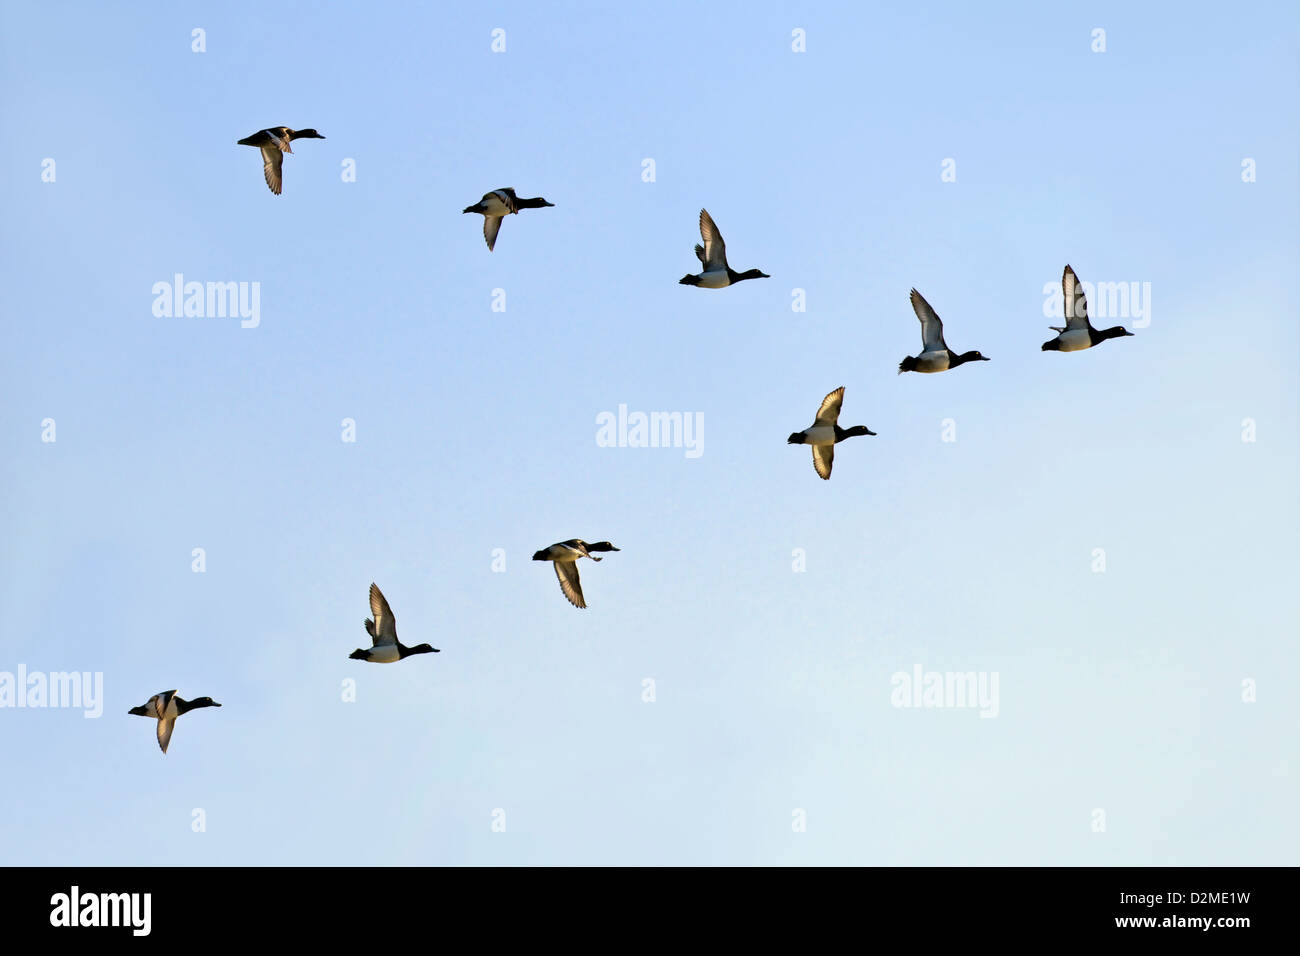 Un petit troupeau de morillons volant dans une formation en 'V' avec des ailes au soleil contre un ciel bleu Banque D'Images